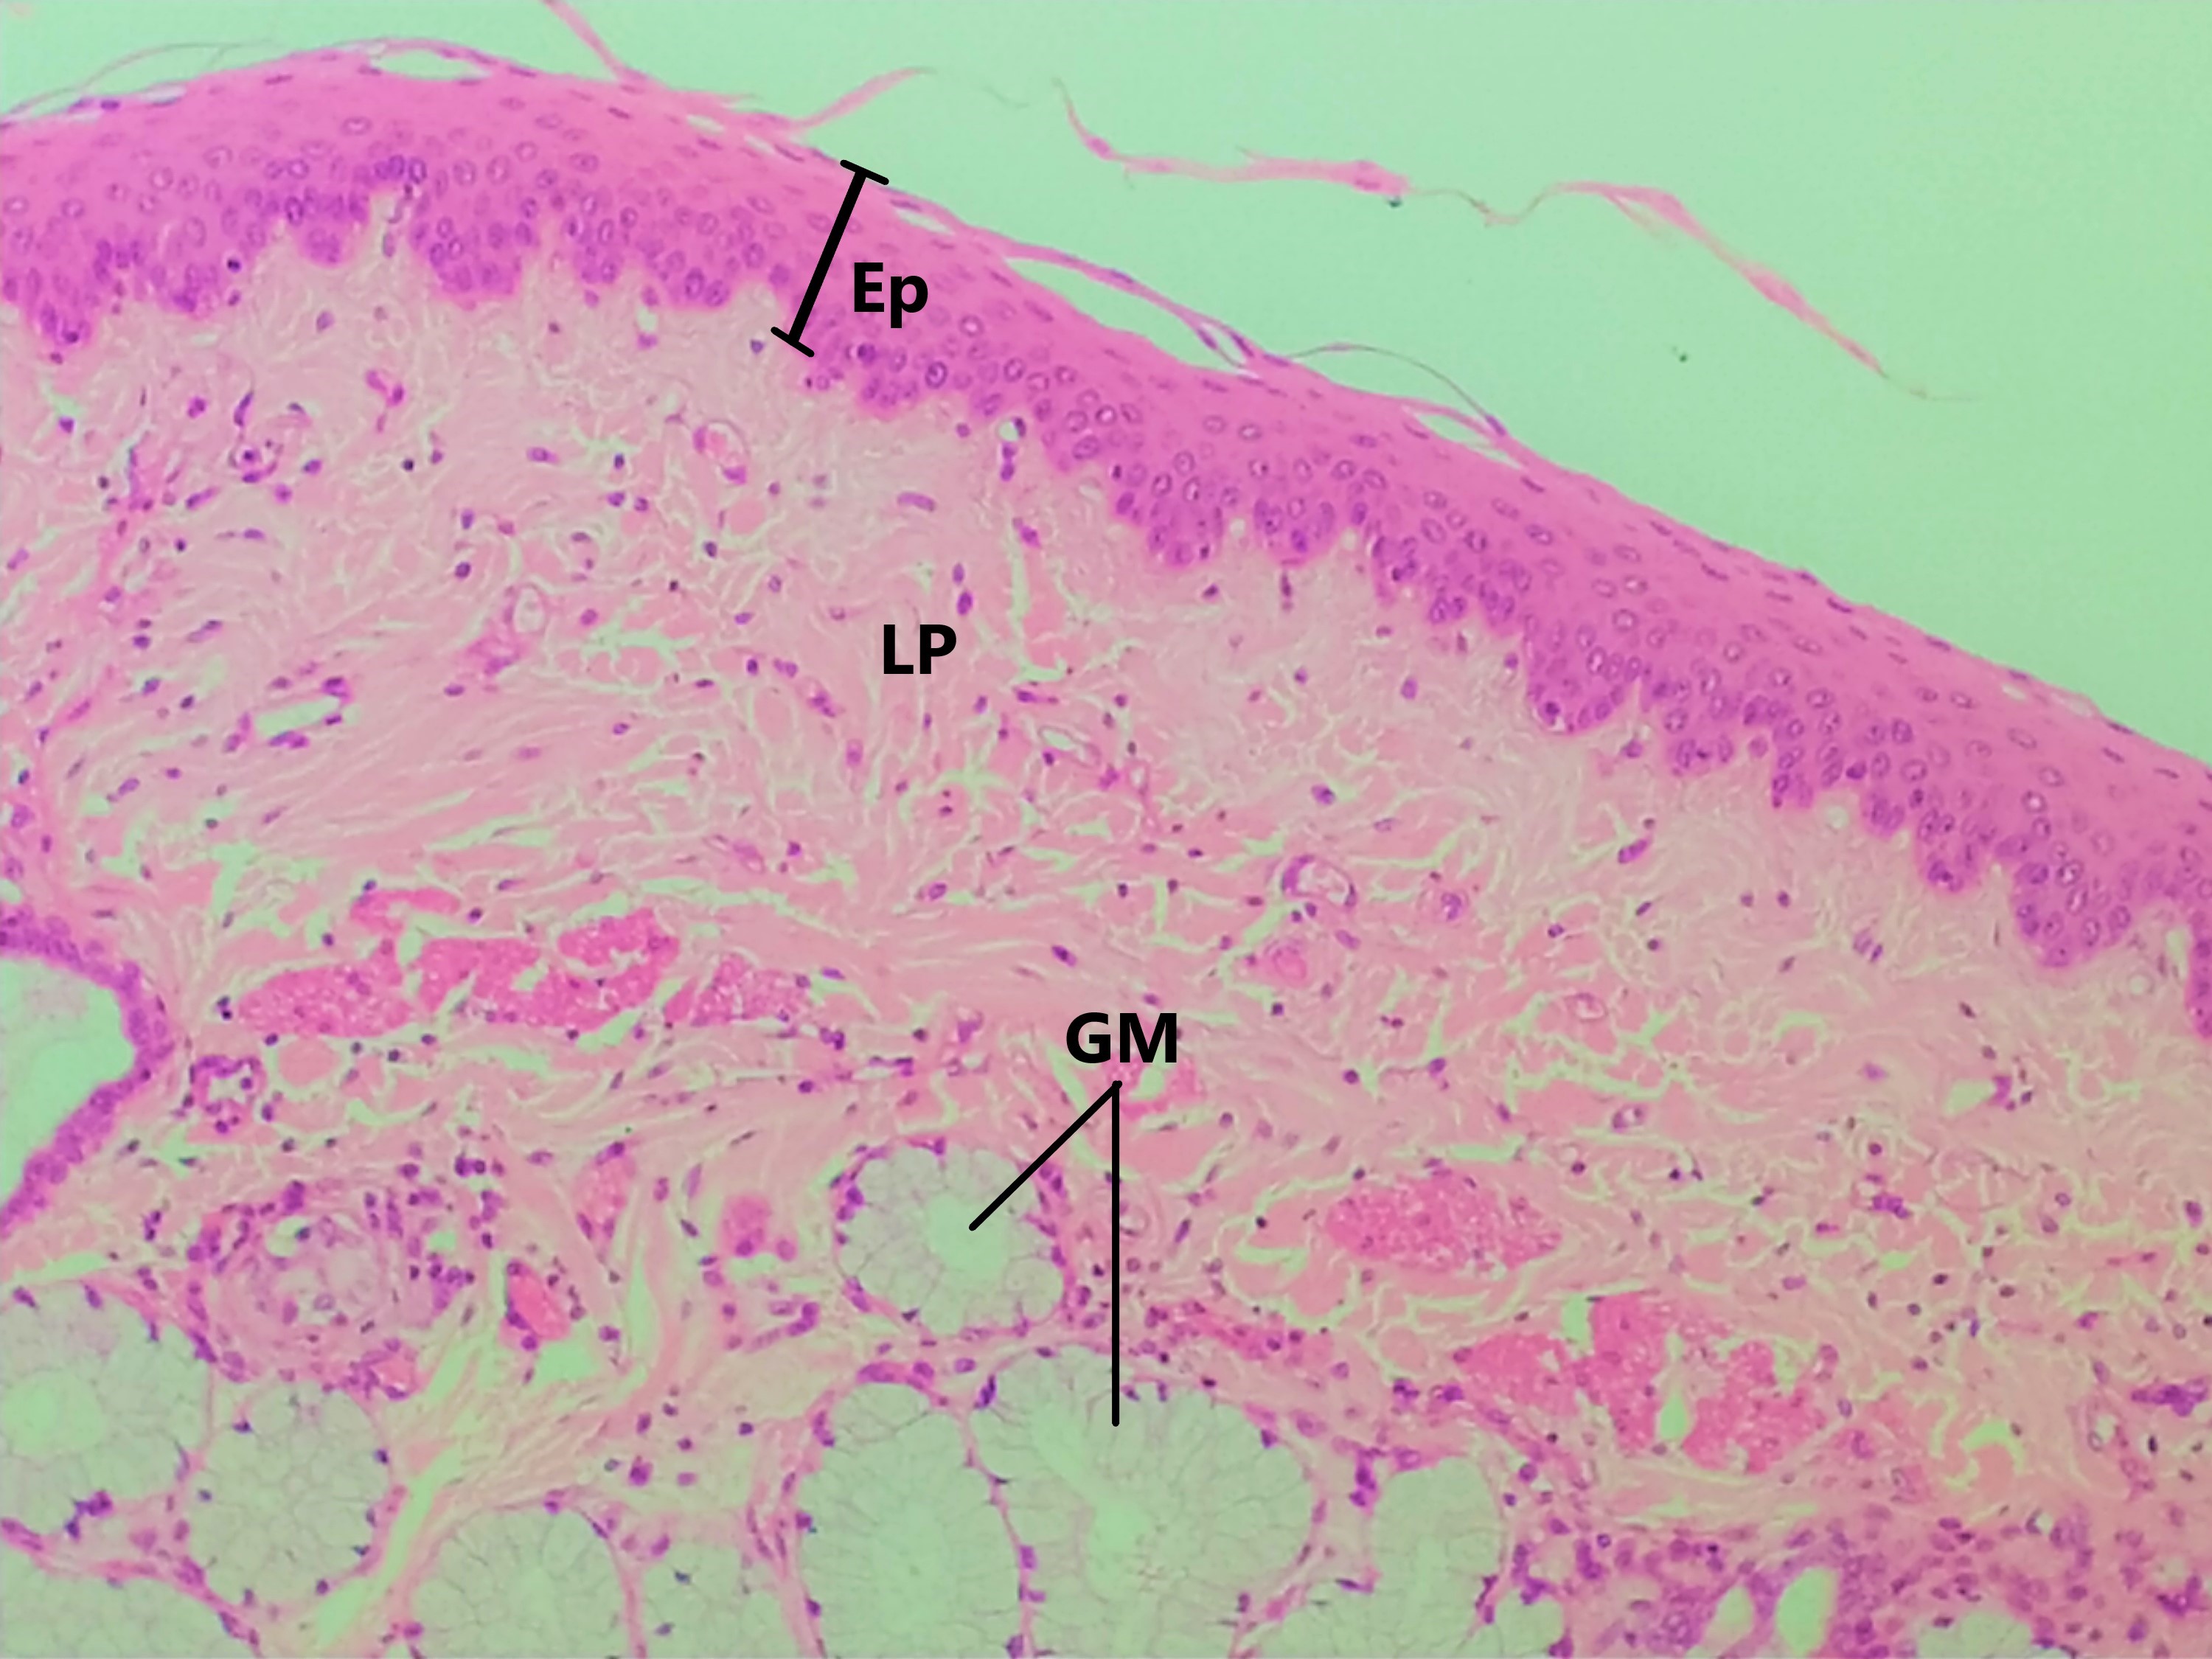 Lâmina: Esôfago (H&E - Aumento: 200x). O esôfago é revestido pelo epitélio estratificado pavimentoso não queratinizado. Possui várias camadas celulares, que variam de formato desde a camada basal até a superfície apical do epitélio, um processo de migração ascendente e diferenciação celular.  Em menor aumento, é possível observar a lâmina própria (LP) (tecido conjuntivo) subjacente e glândulas mucosas (GM), cuja secreção lubrifica e protege a superfície epitelial, não sendo necessária queratinização (camada córnea) neste local.